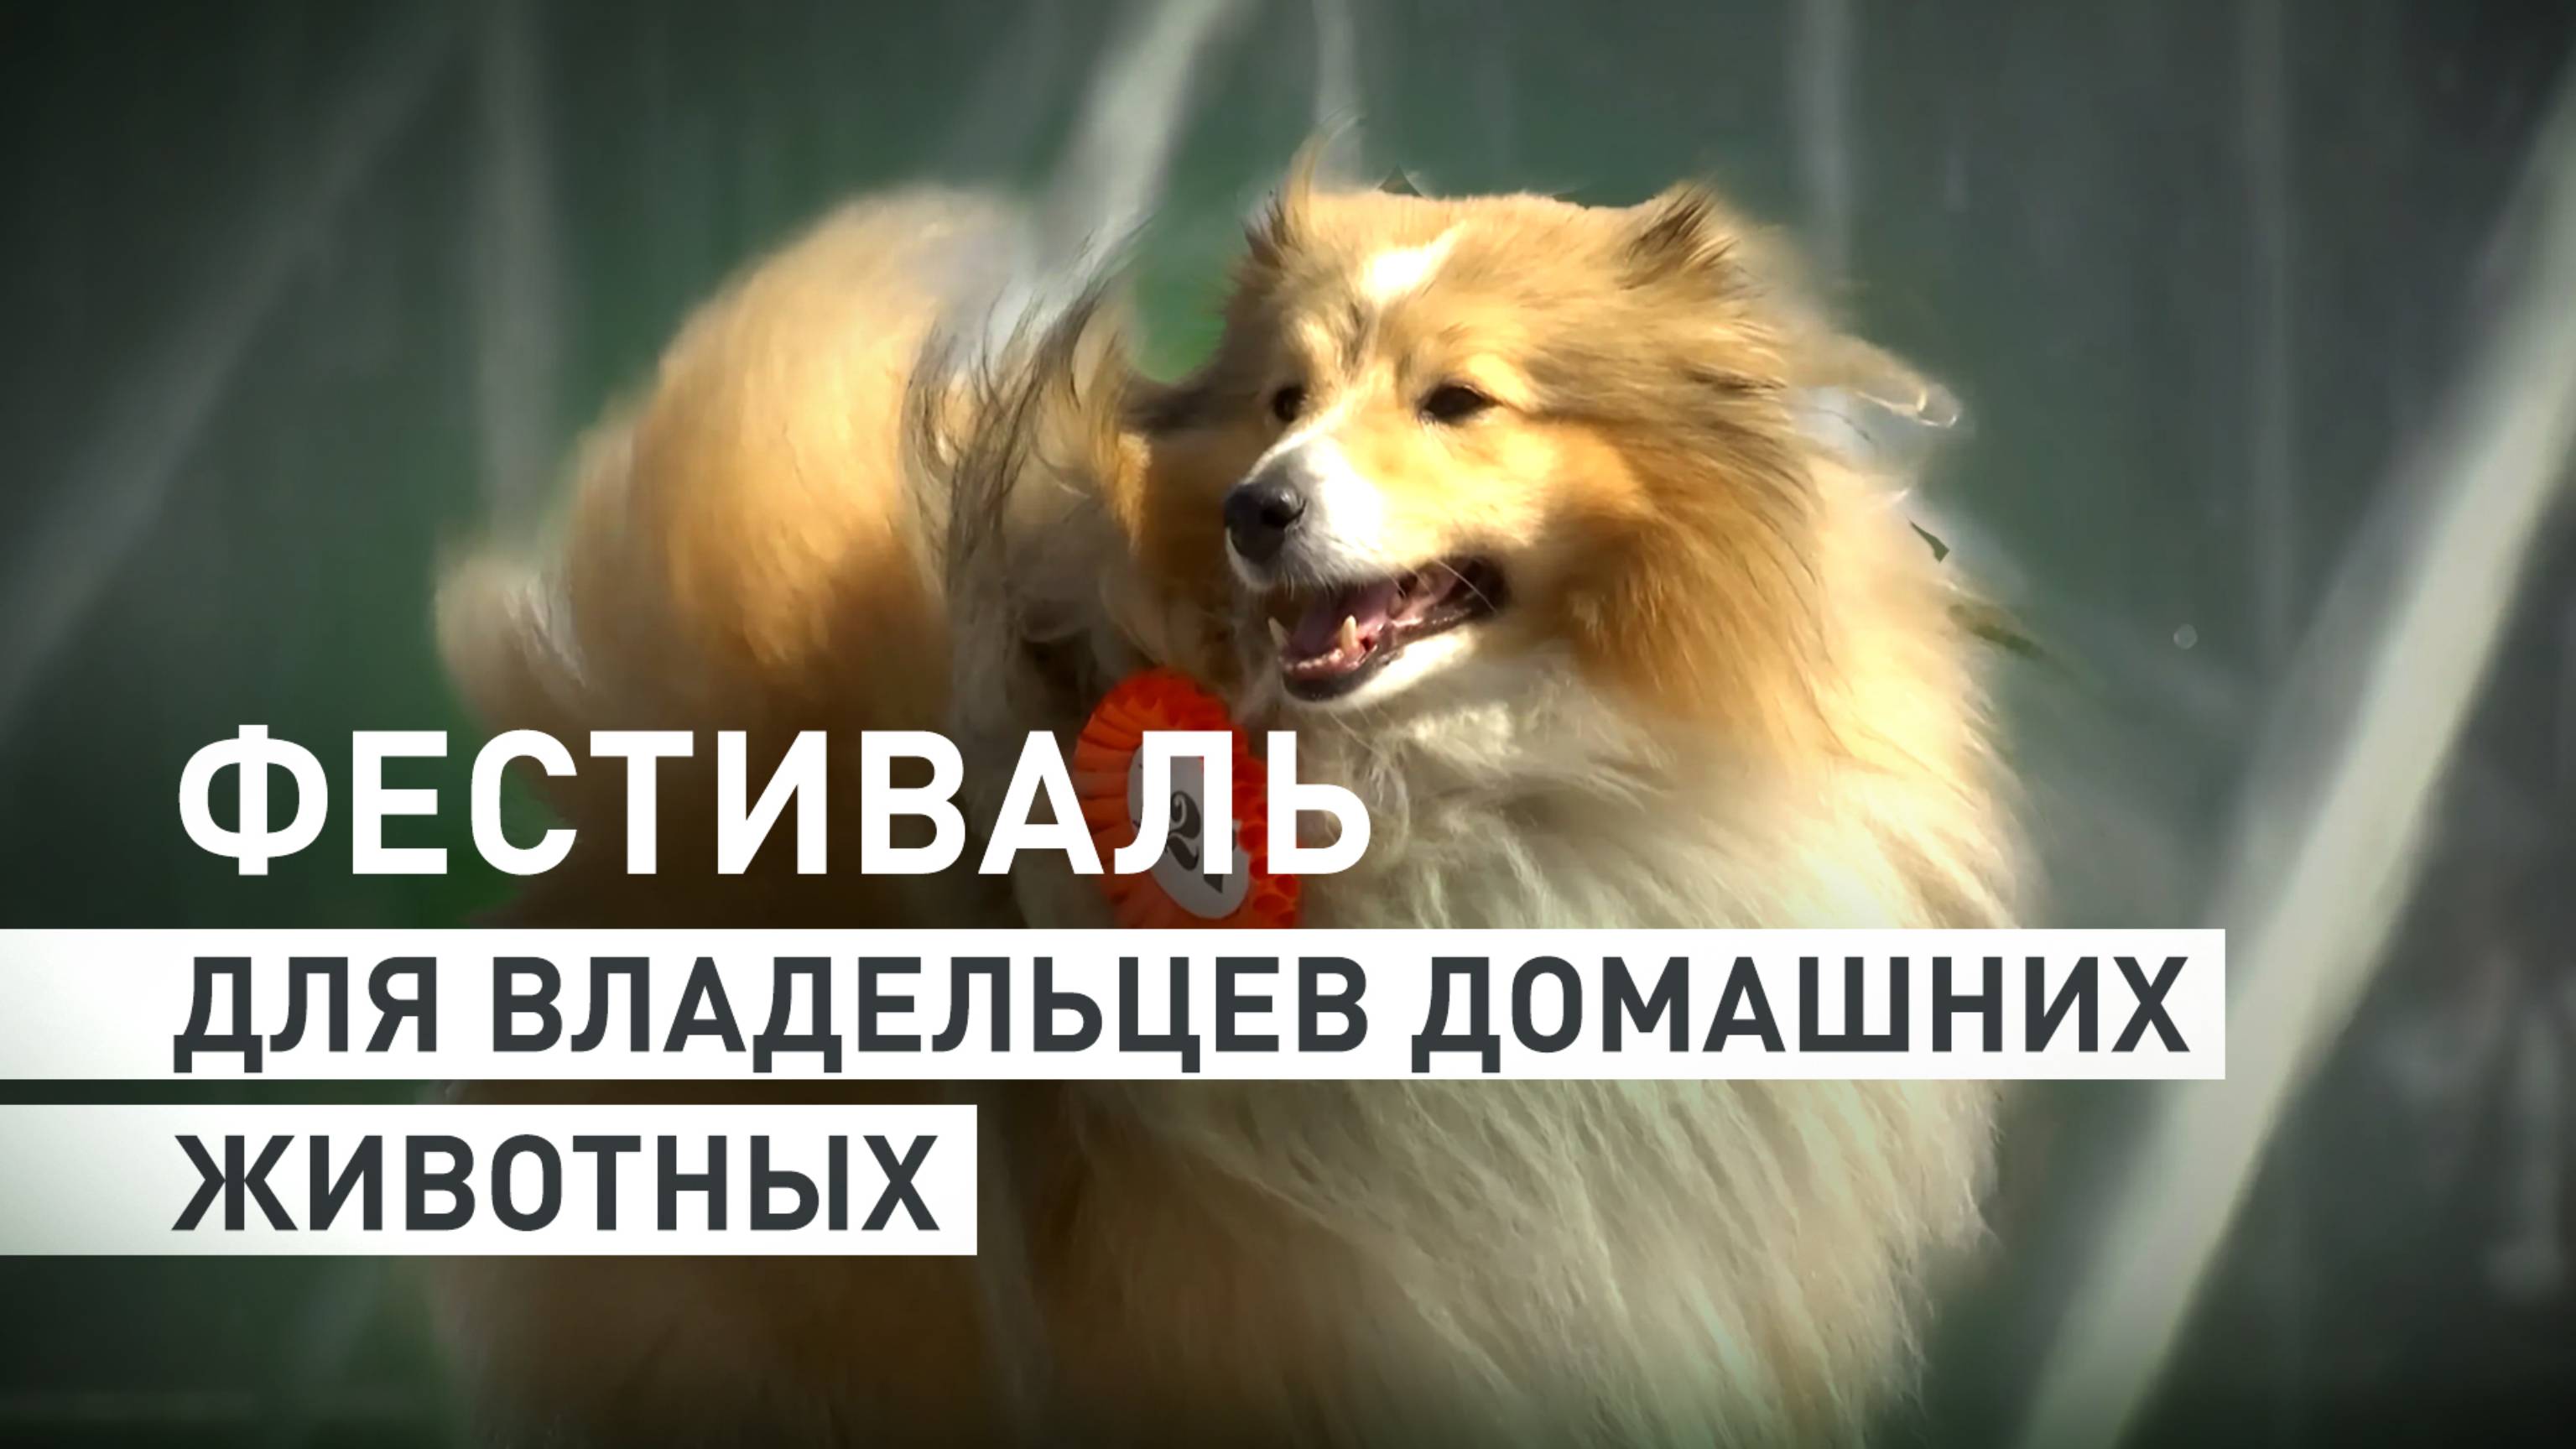 Ежегодный фестиваль для владельцев домашних животных проходит в Санкт-Петербурге